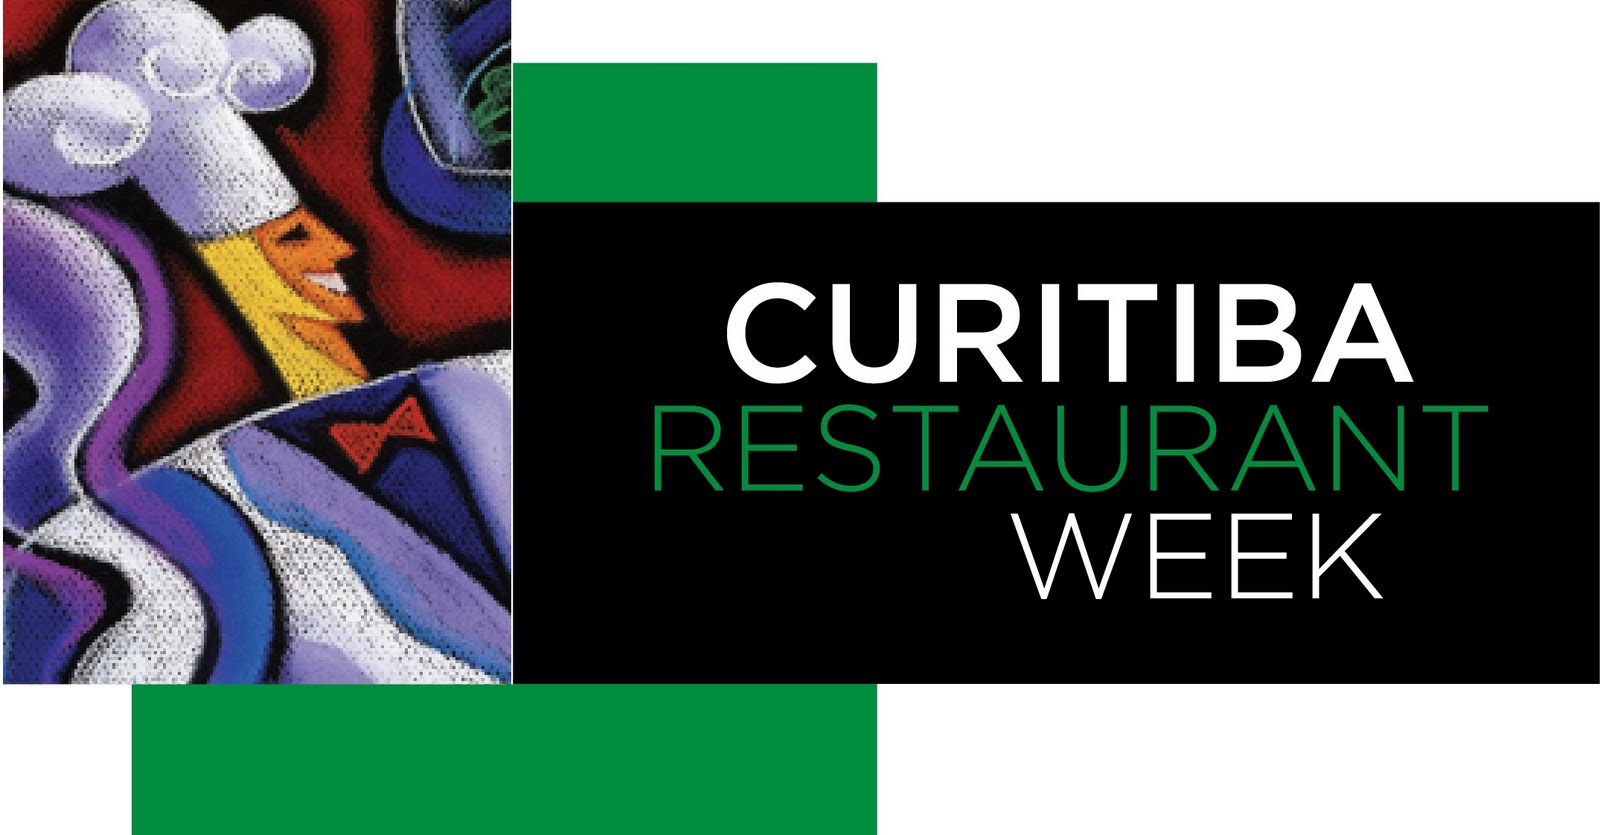 Curitiba abre portas para mais uma edição do “Curitiba Restaurant Week”